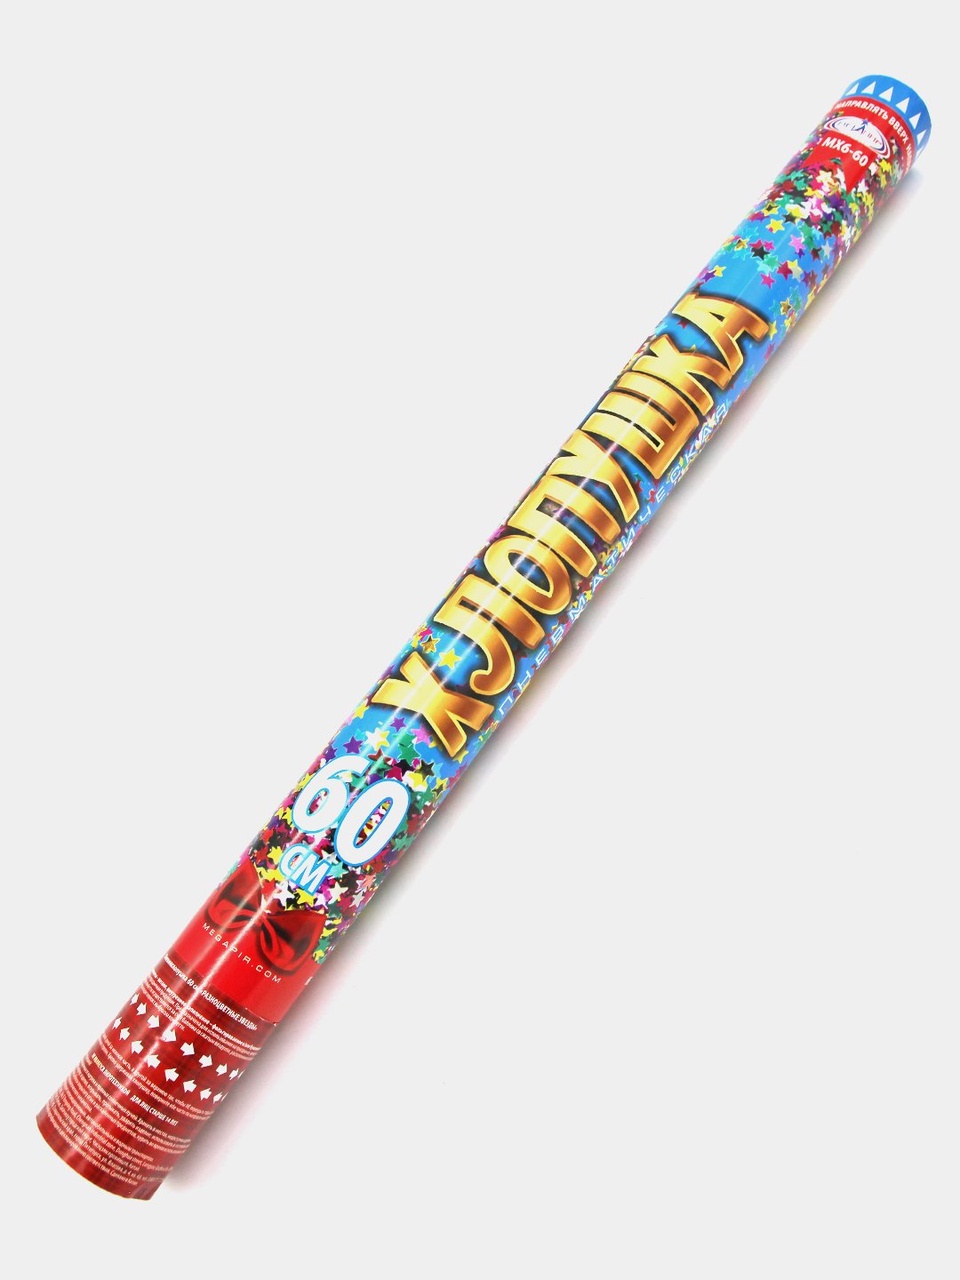 Пневматическая хлопушка 60 см конфетти разноцветные звезды из фольги МХ6-60 - 290 ₽, заказать онлайн.